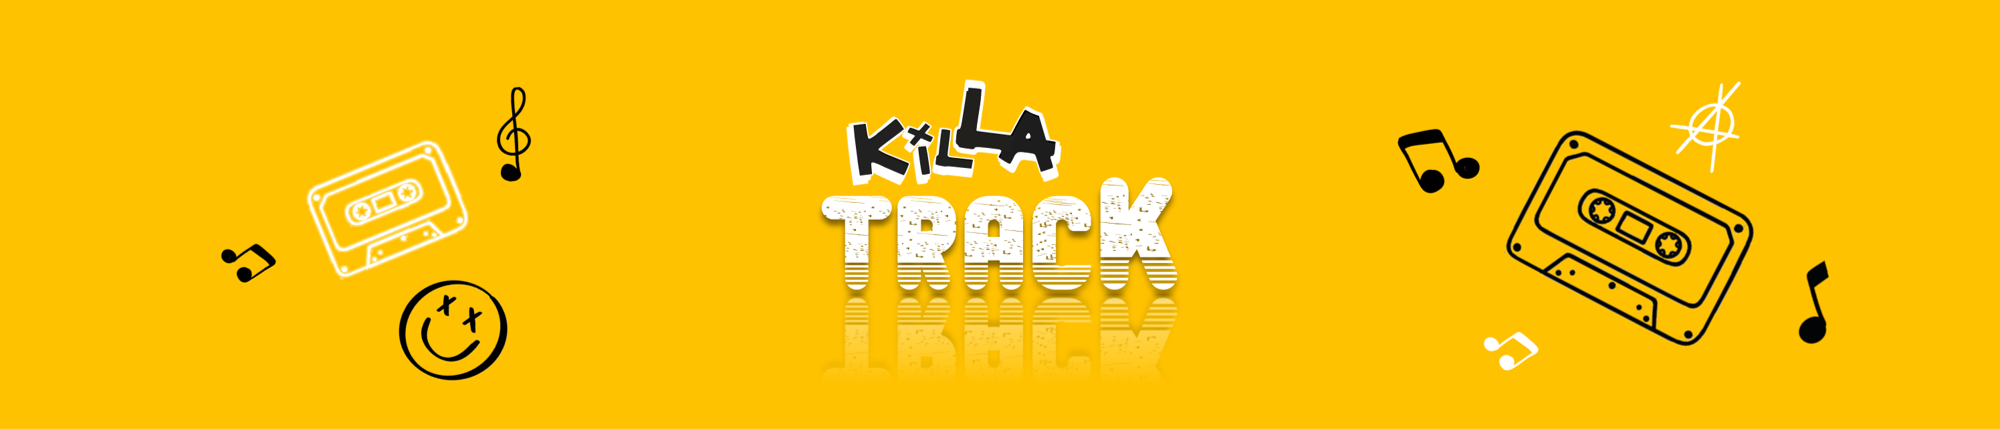 Killa Track